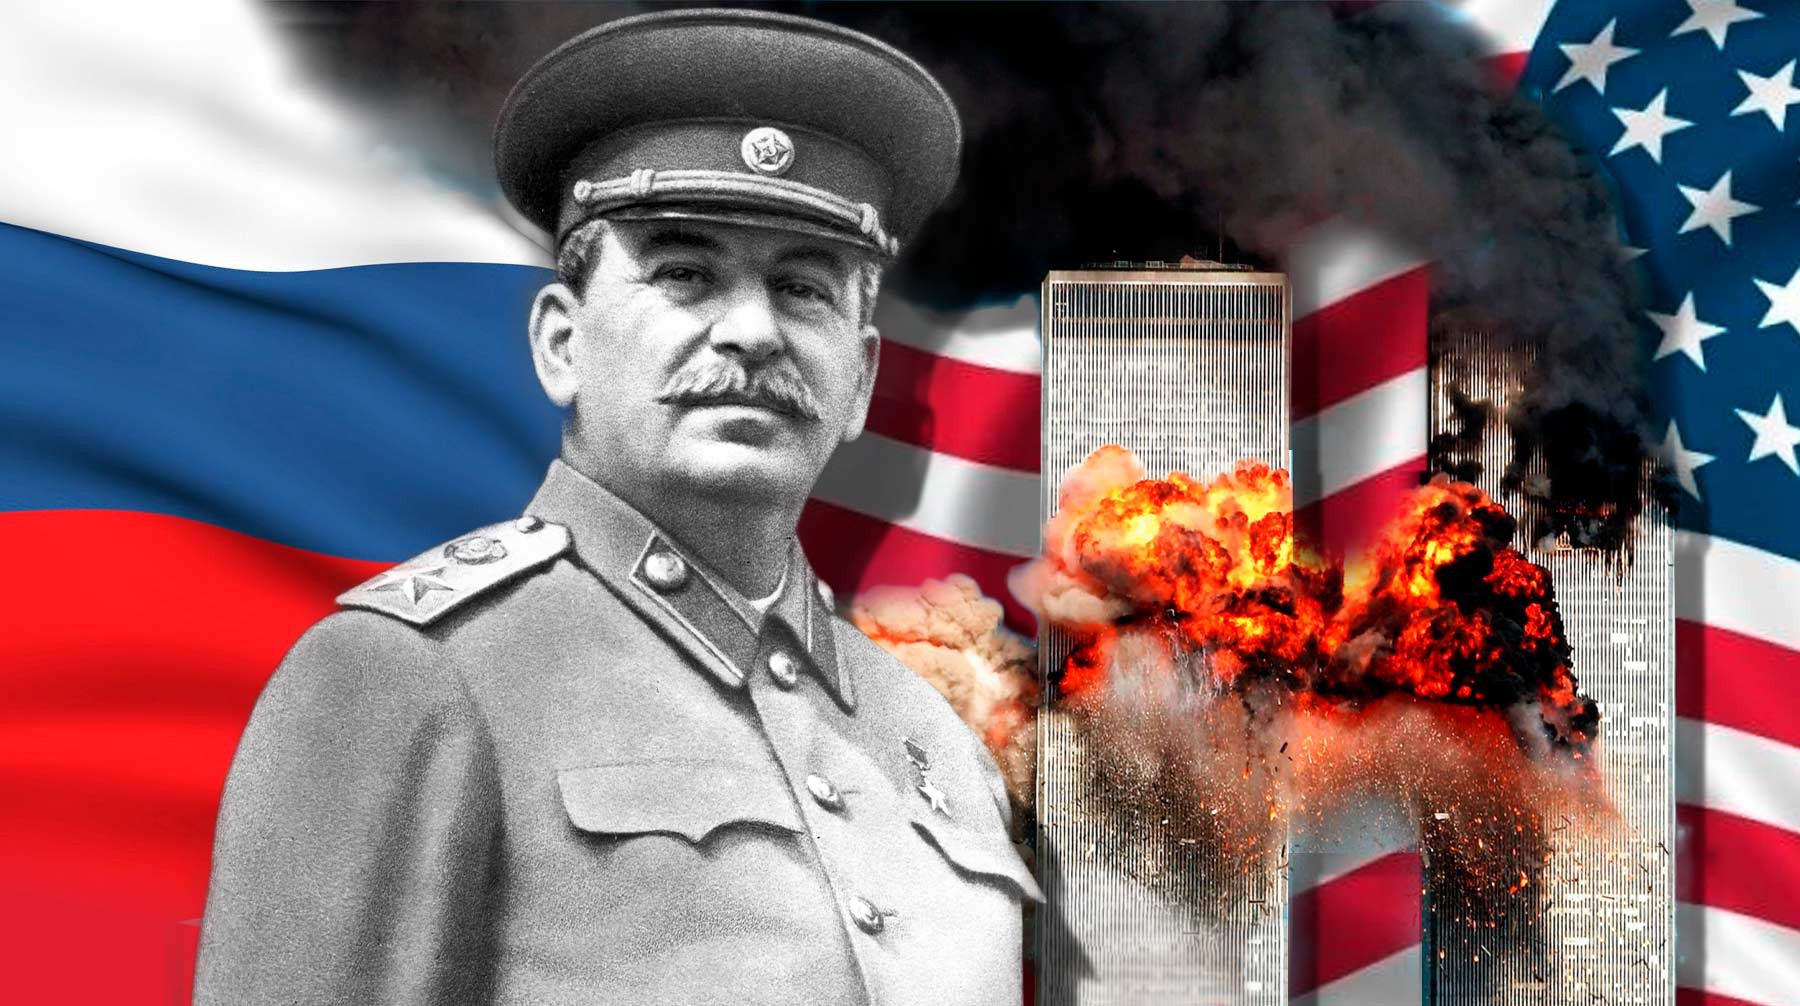 Dailystorm - Американский солдат: Для нас война с терроризмом — как для русских Великая Отечественная